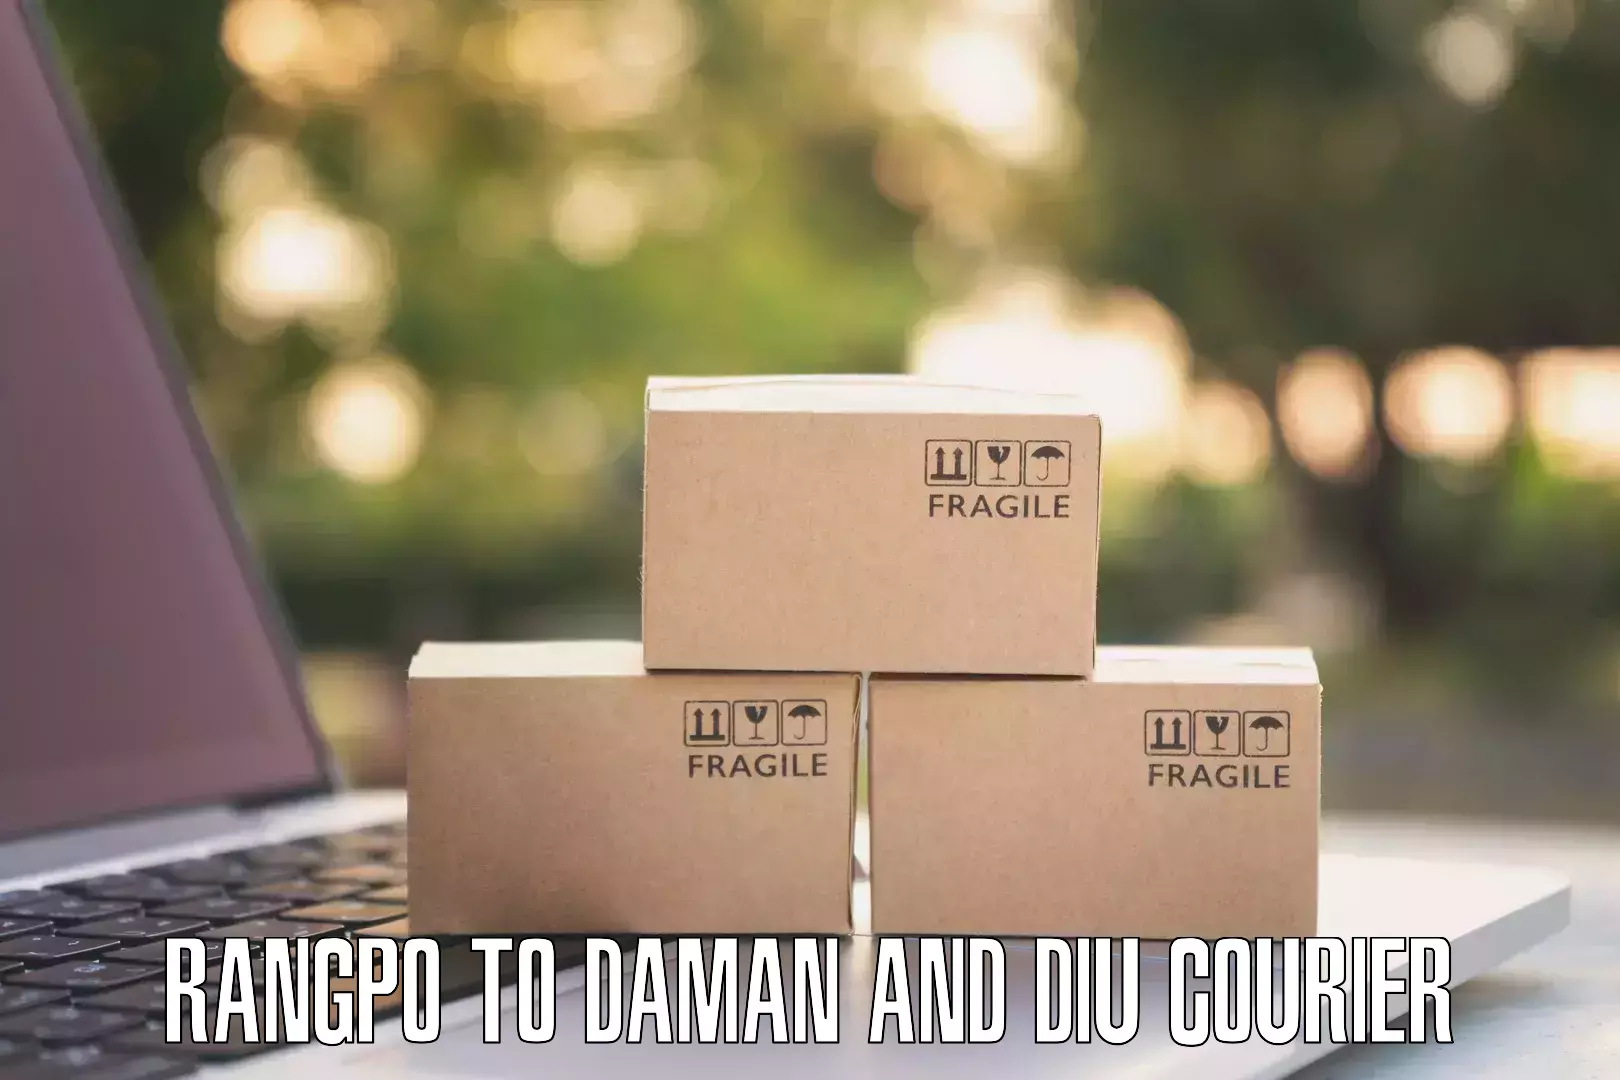 Easy access courier services Rangpo to Daman